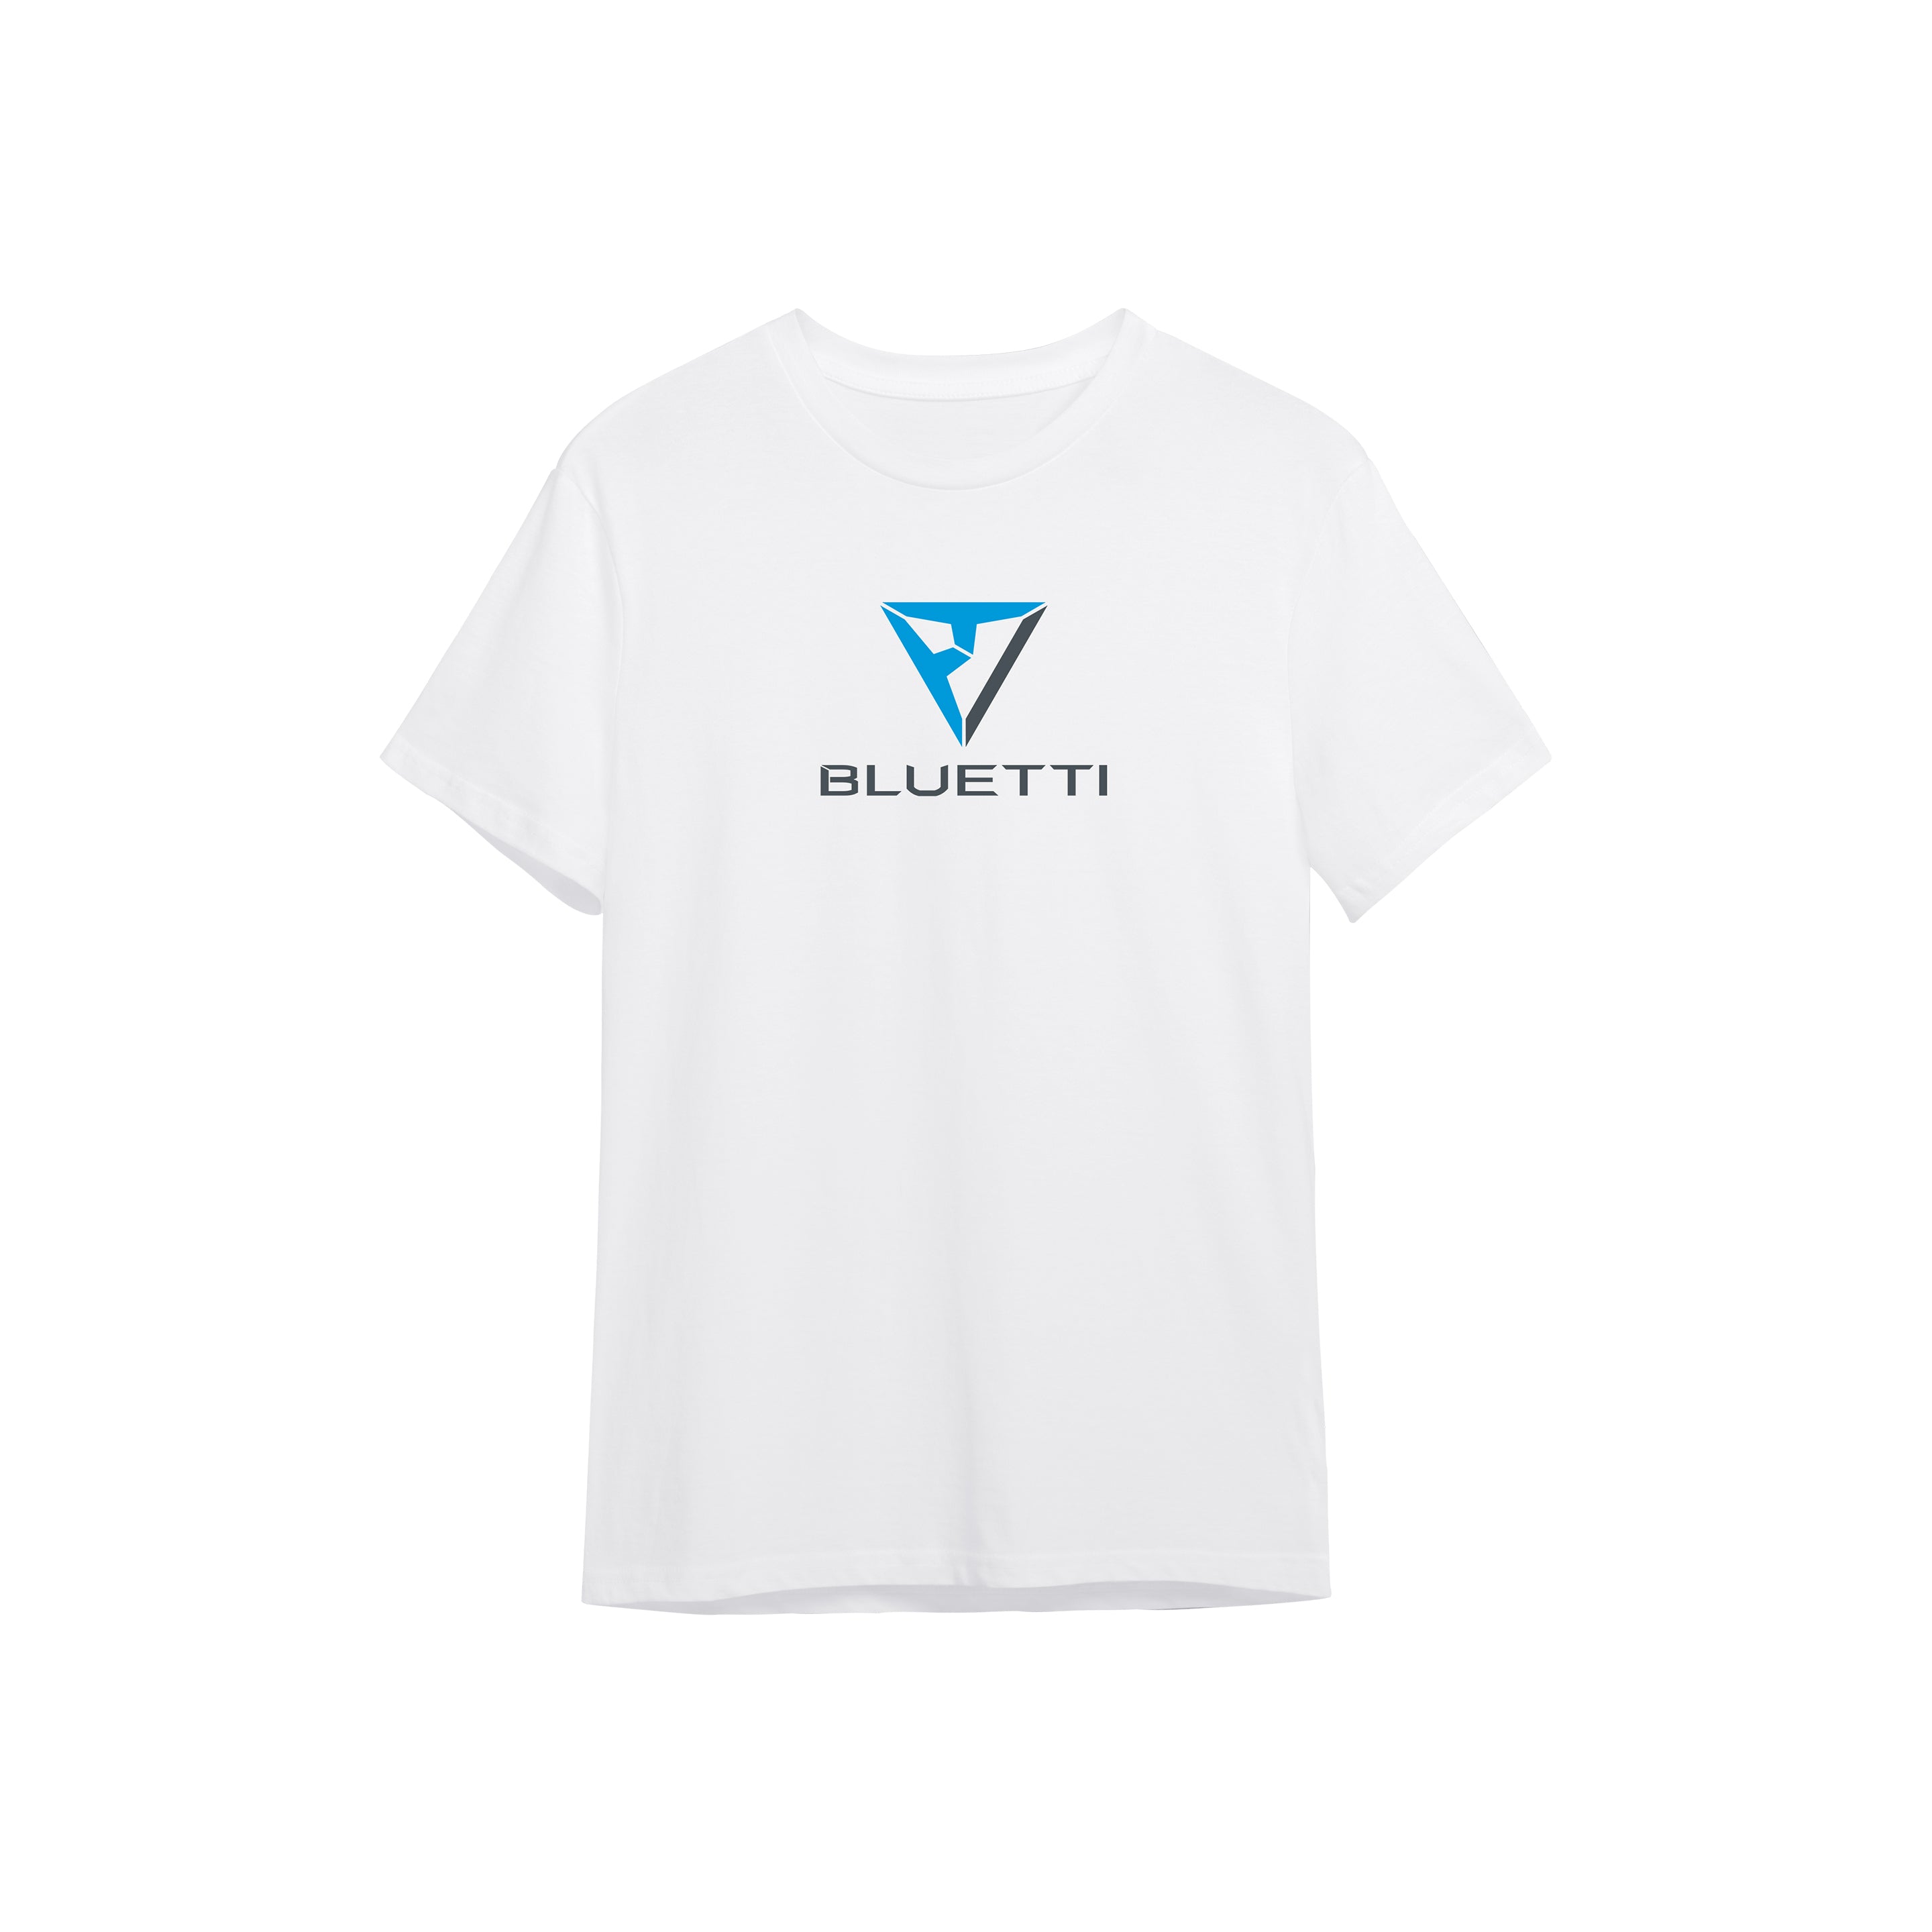 BLUETTI T-shirt, 2XL / White